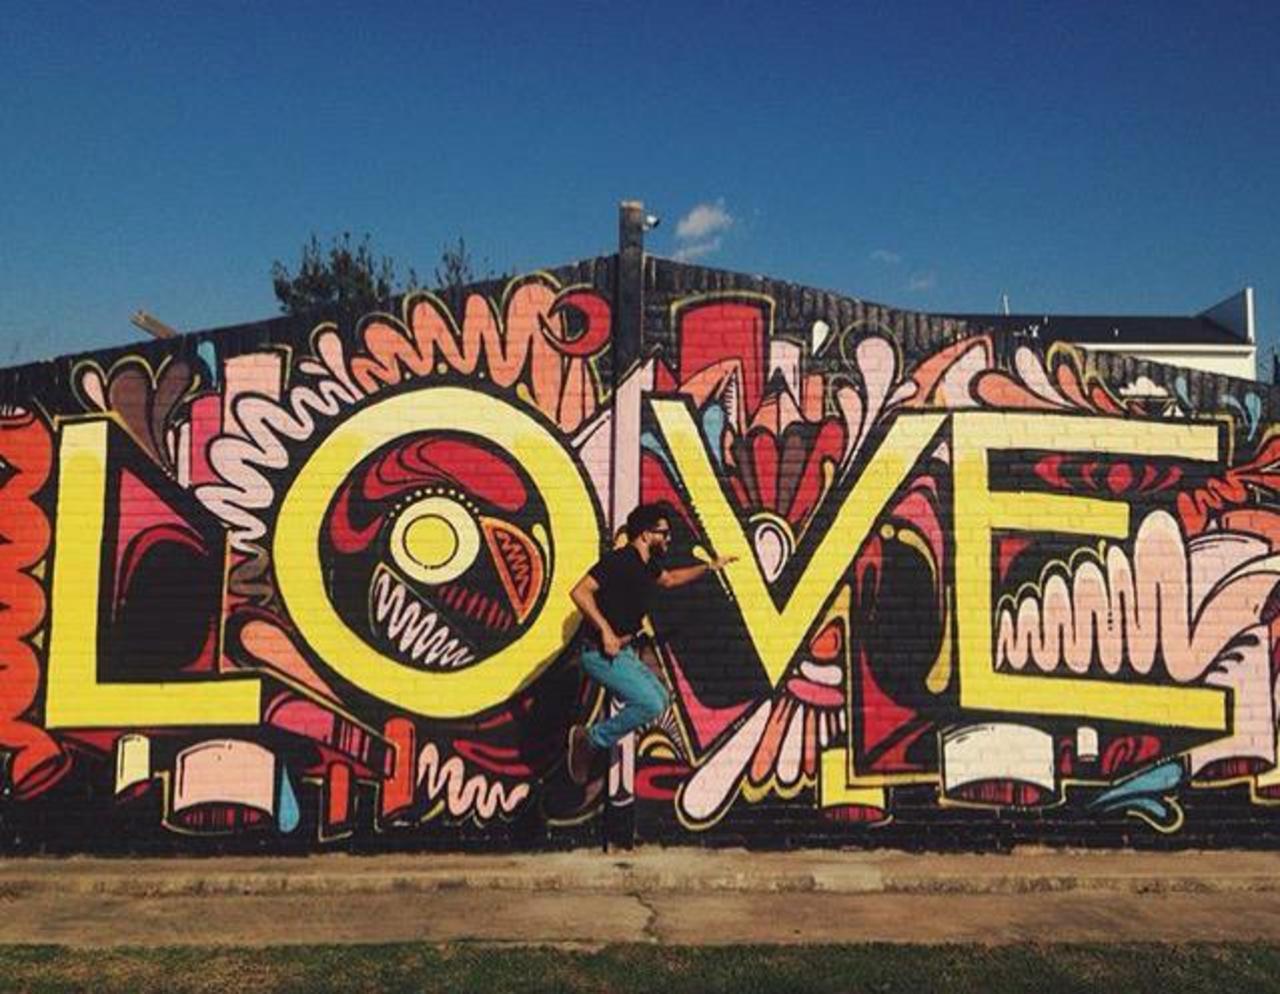 Love ❤️
Street Art by WileyArt

#art #graffiti #mural #streetart http://t.co/QubkleUujz